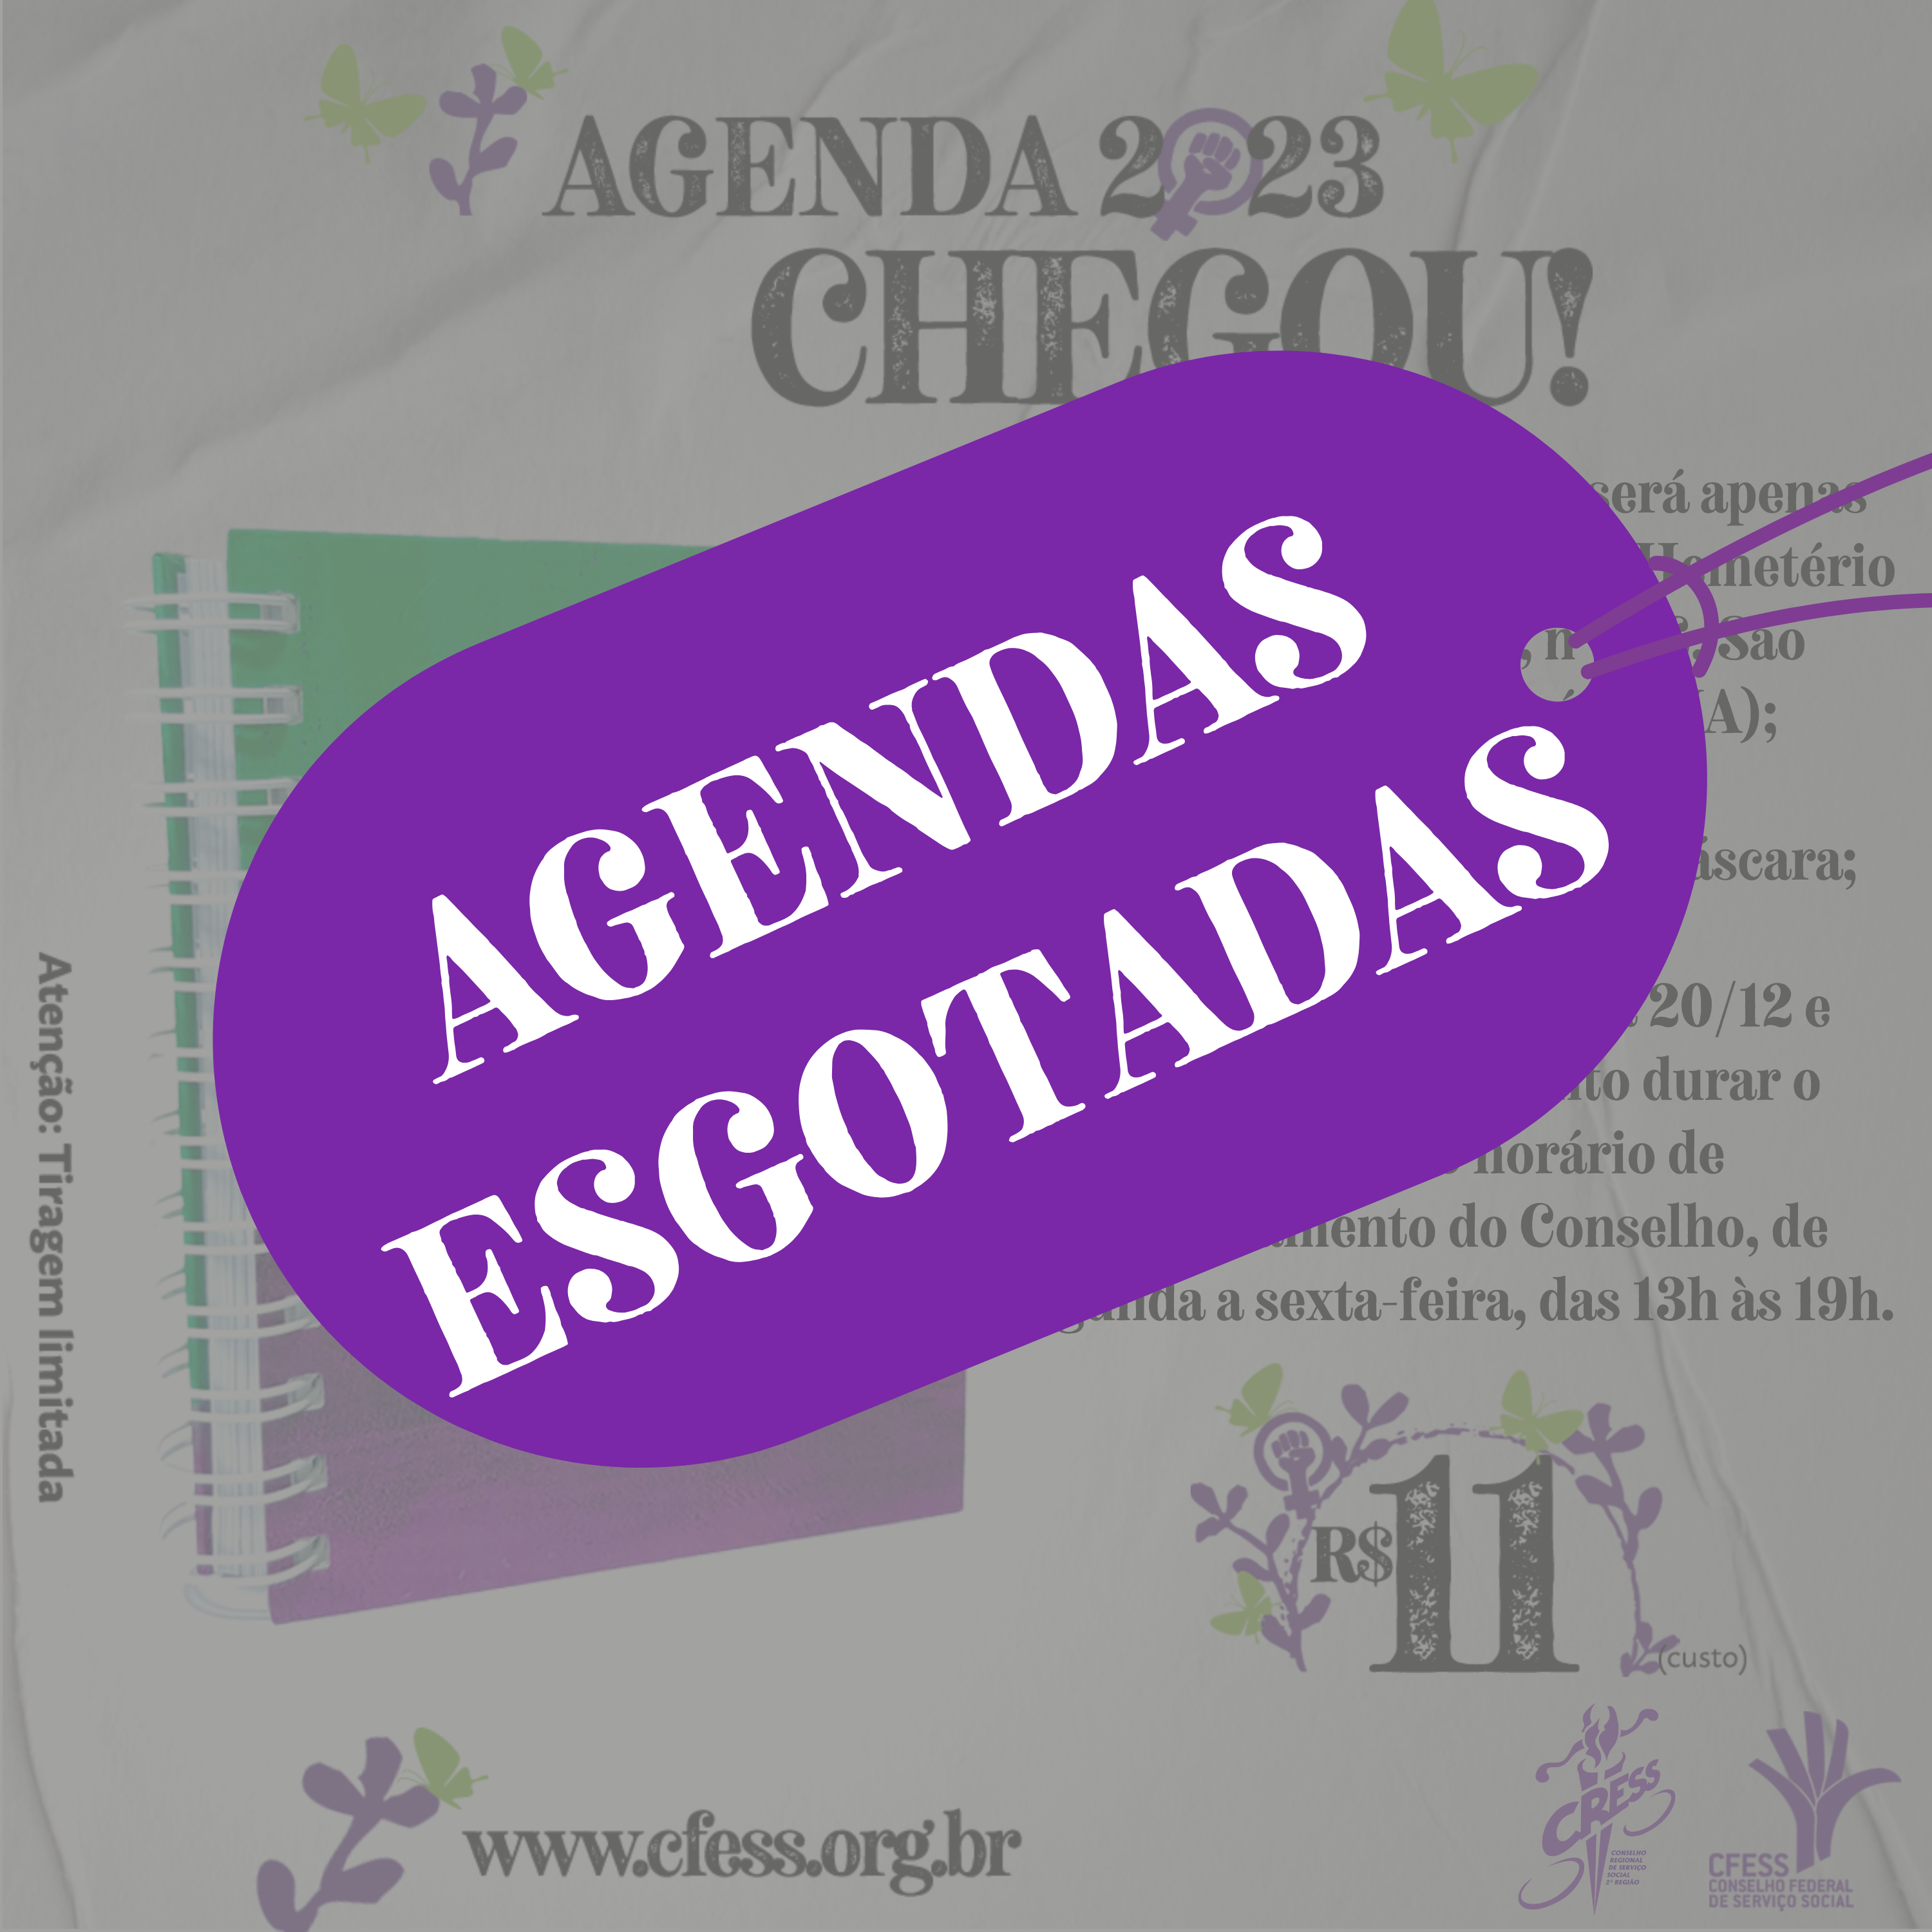 Agenda 2023 (3)